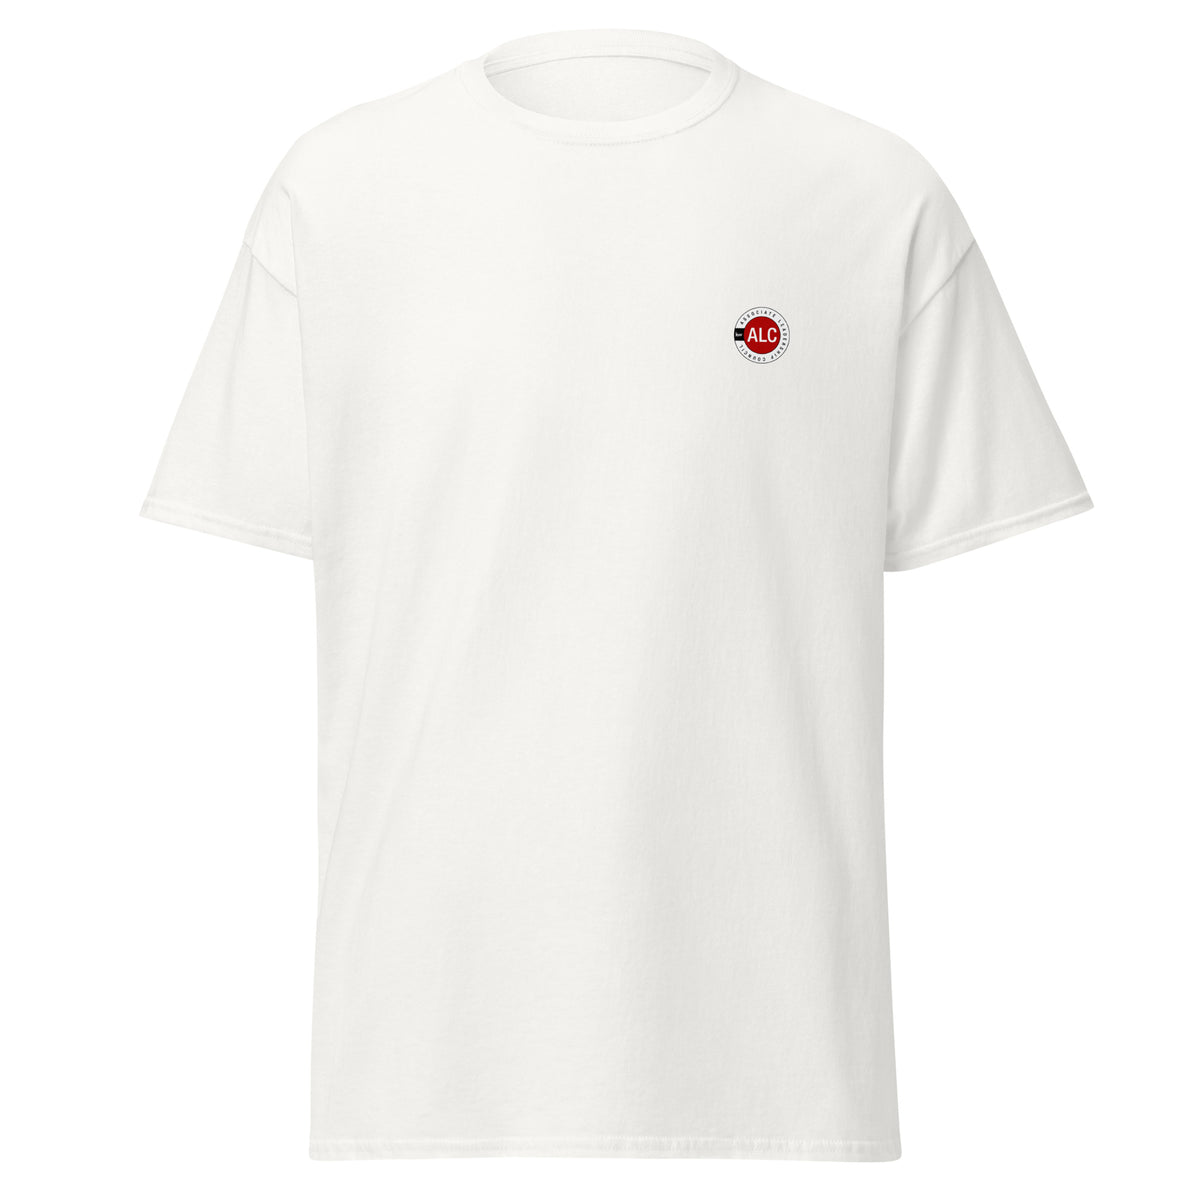 T-Shirt Basique Unisexe - ALC